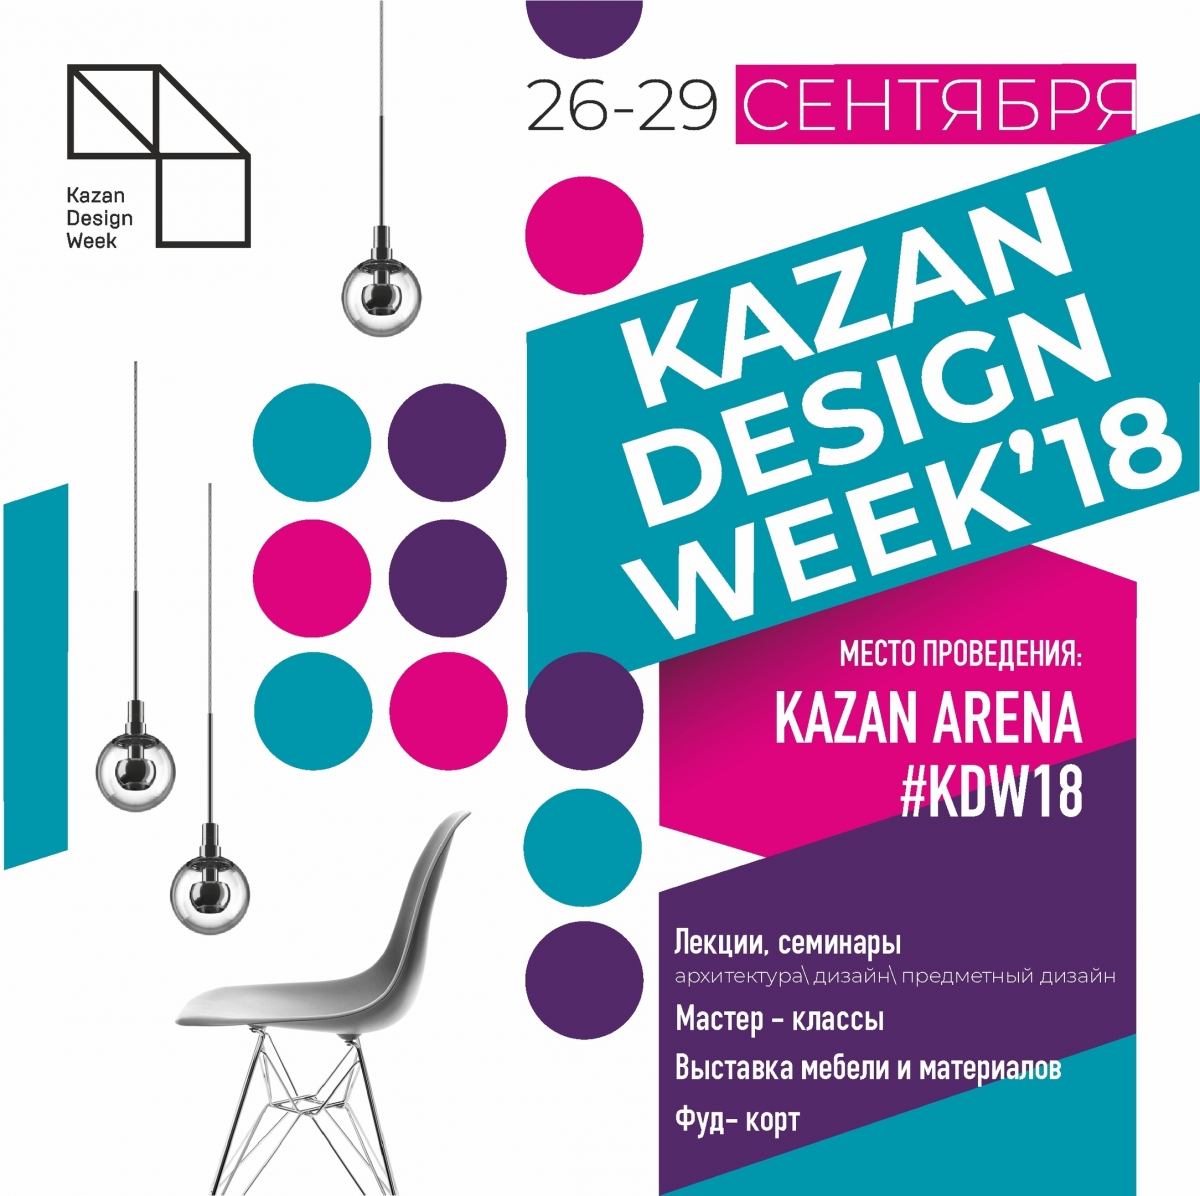 Открытие Kazan Design Week – уникального мероприятия в сфере дизайна и архитектуры